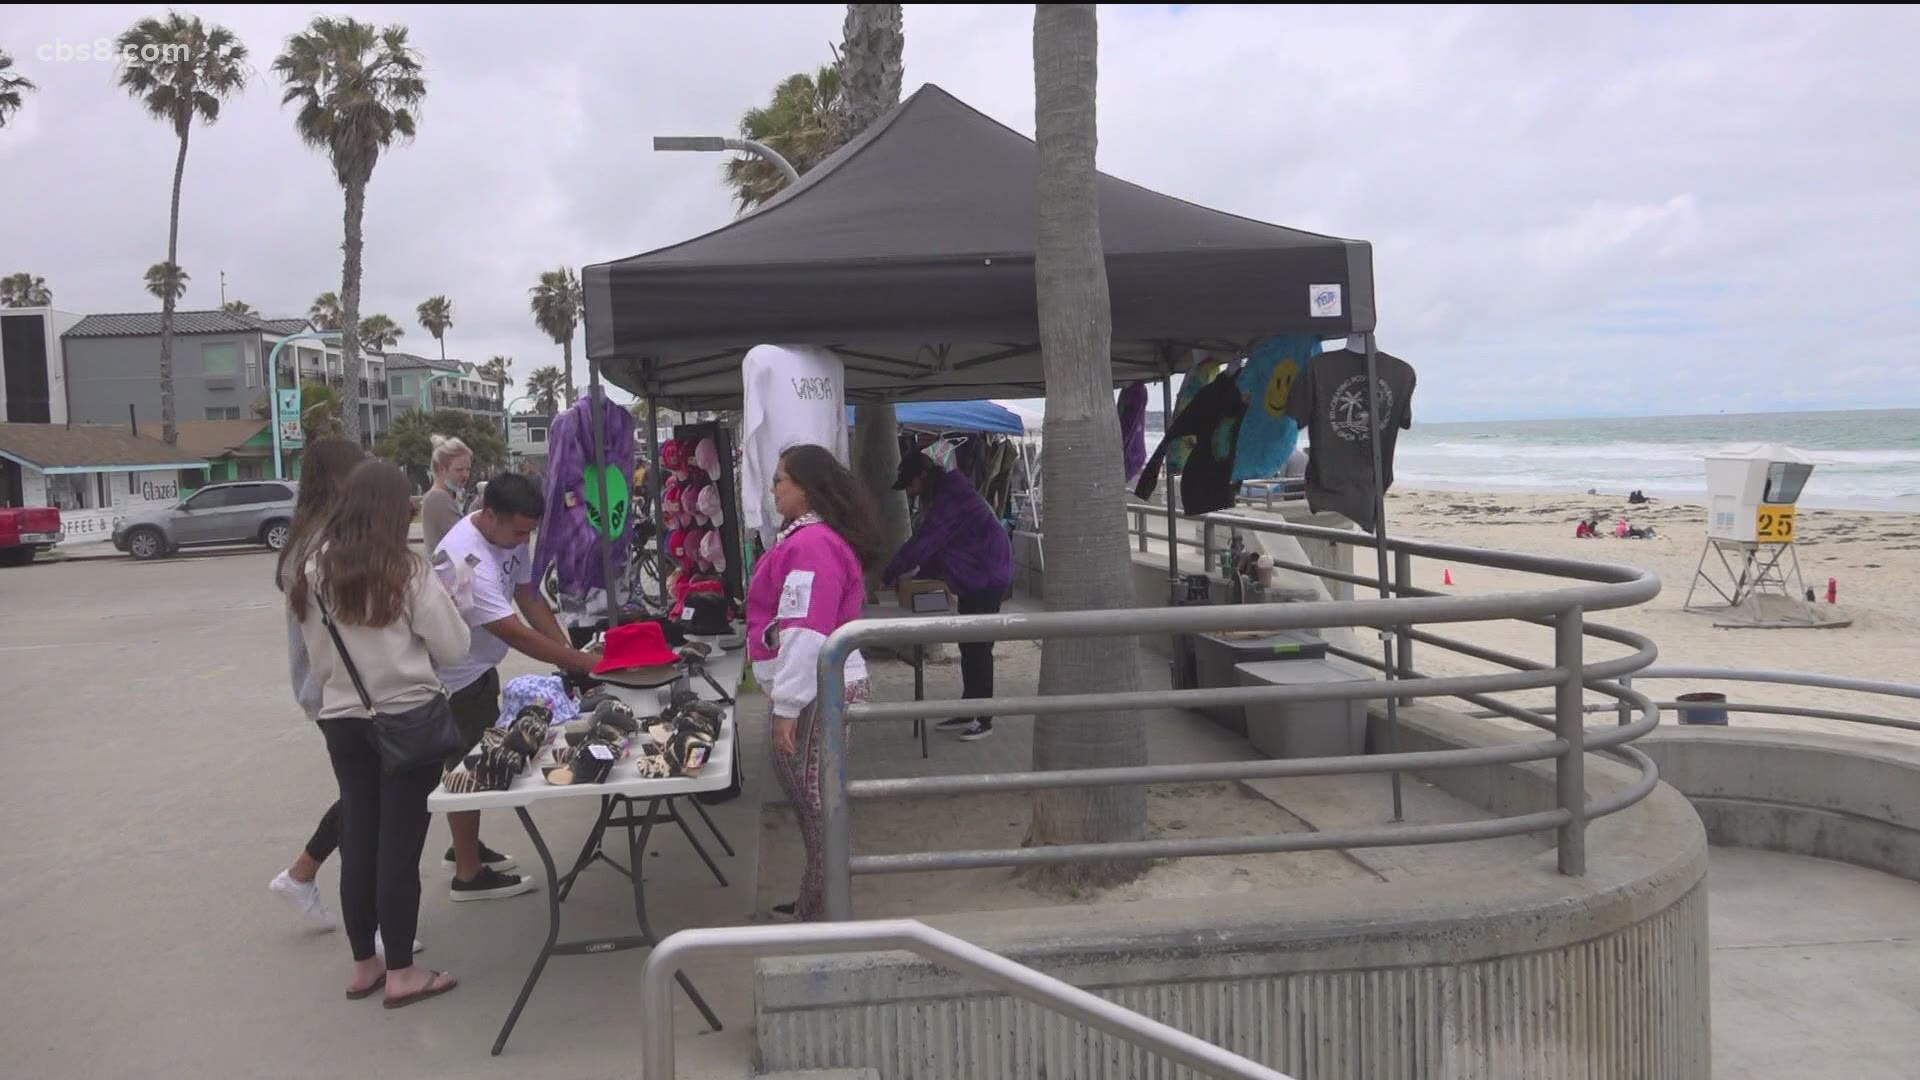 Controversy over vendor sales along boardwalk in Pacific Beach